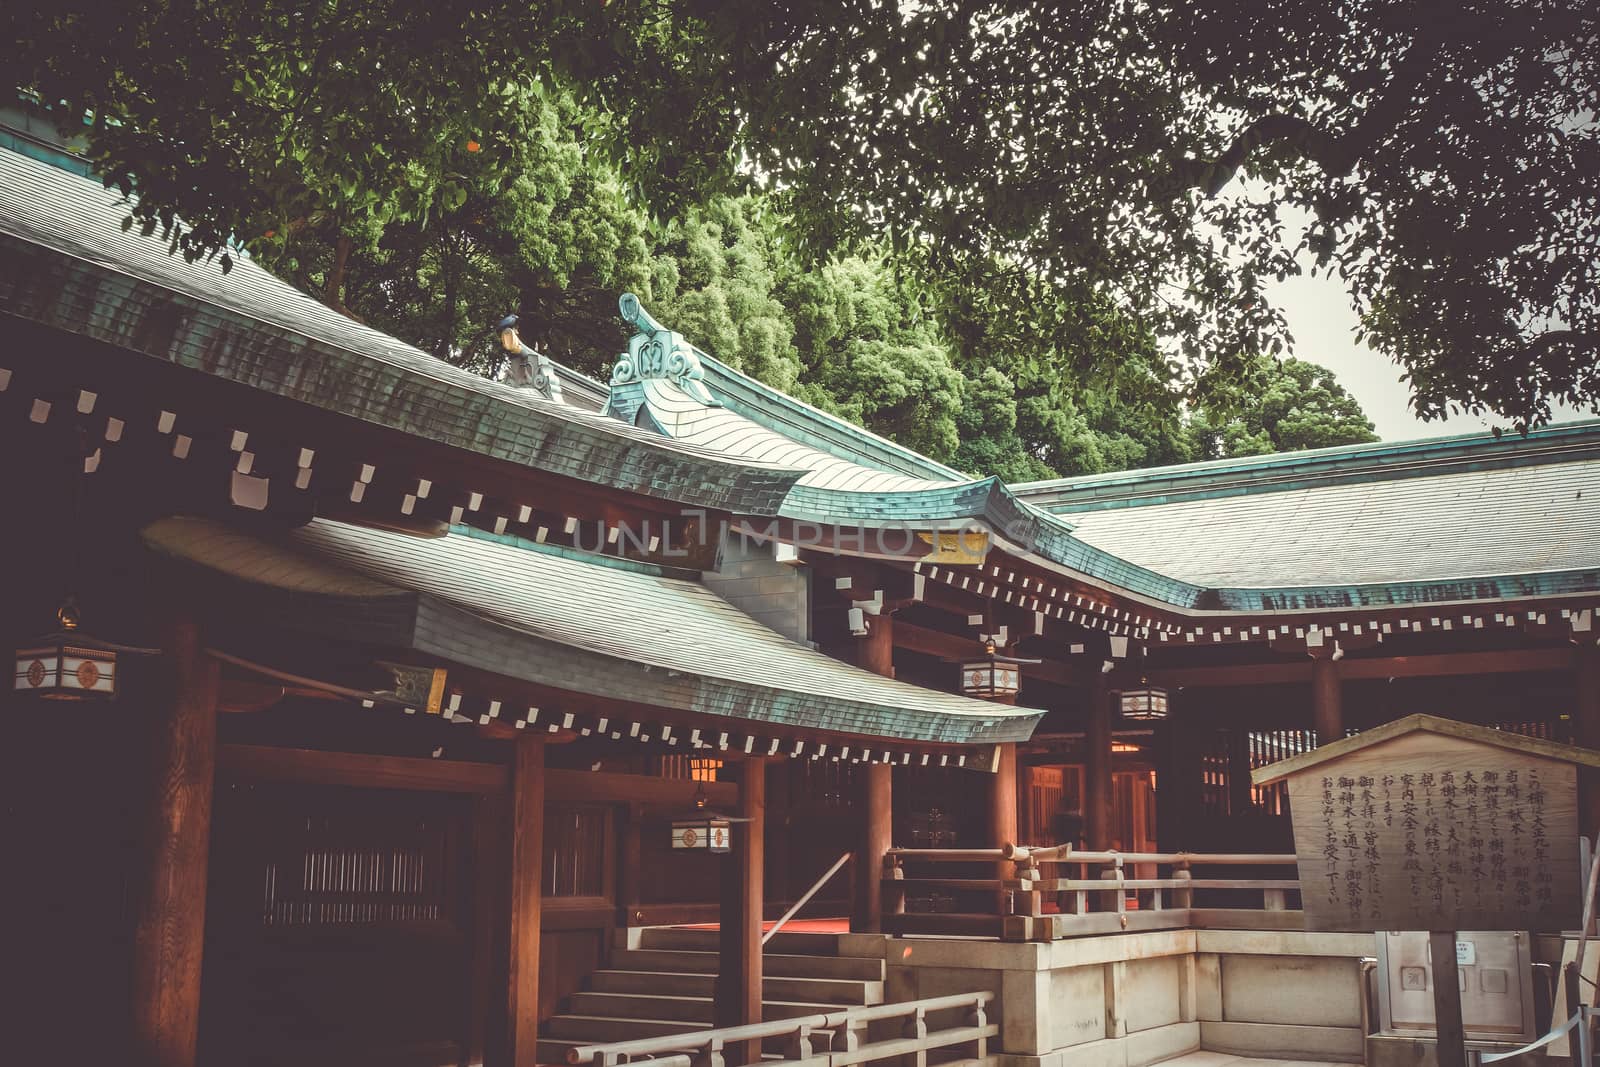 Meiji Shrine temple in yoyogi, Tokyo, Japan